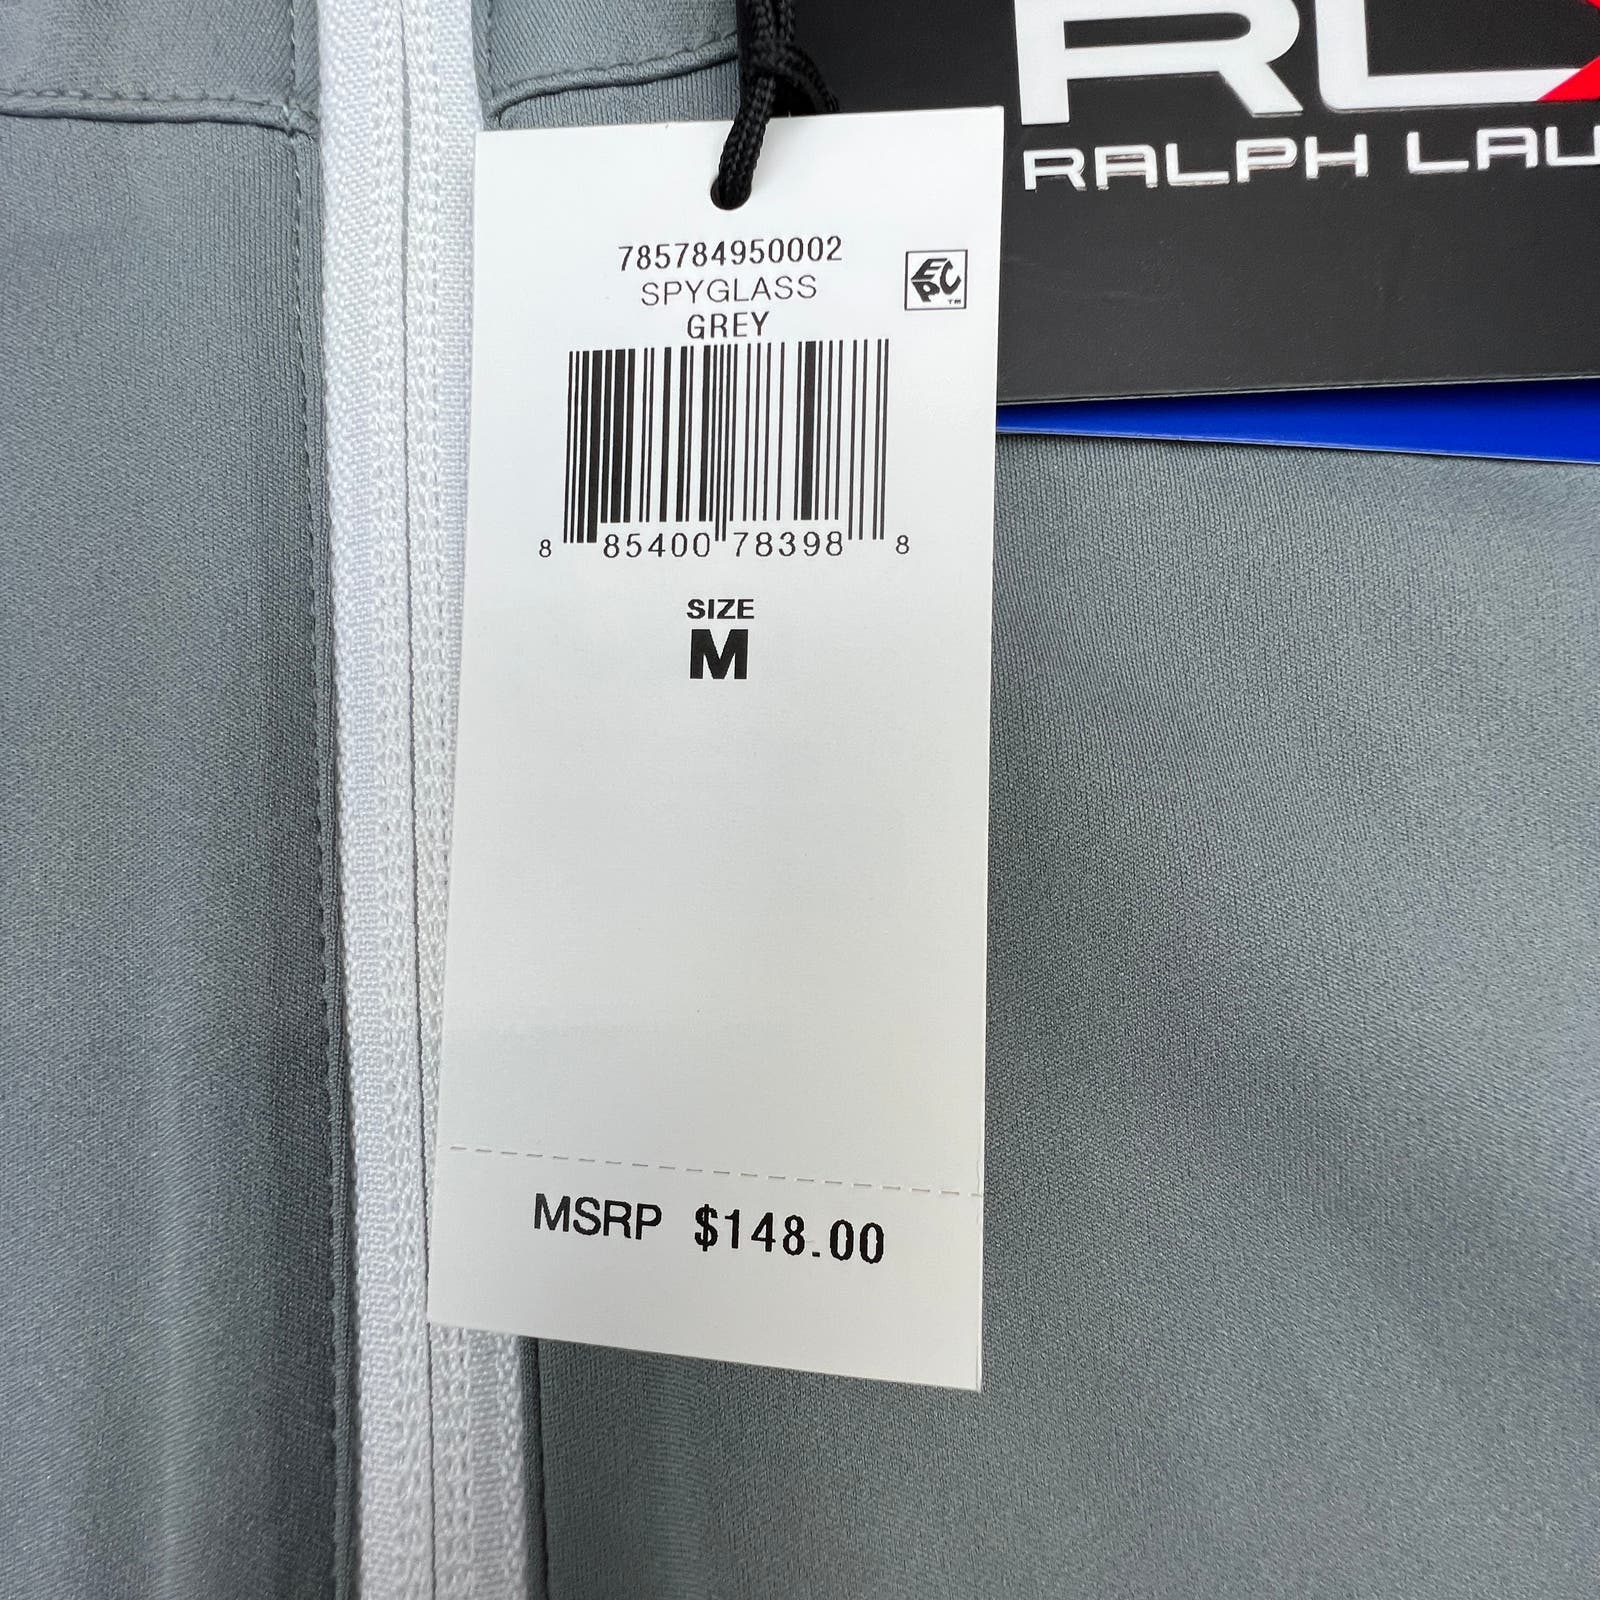 RLX Ralph Lauren Men Grey Sweatshirt US M Half Zip Long Sleeve